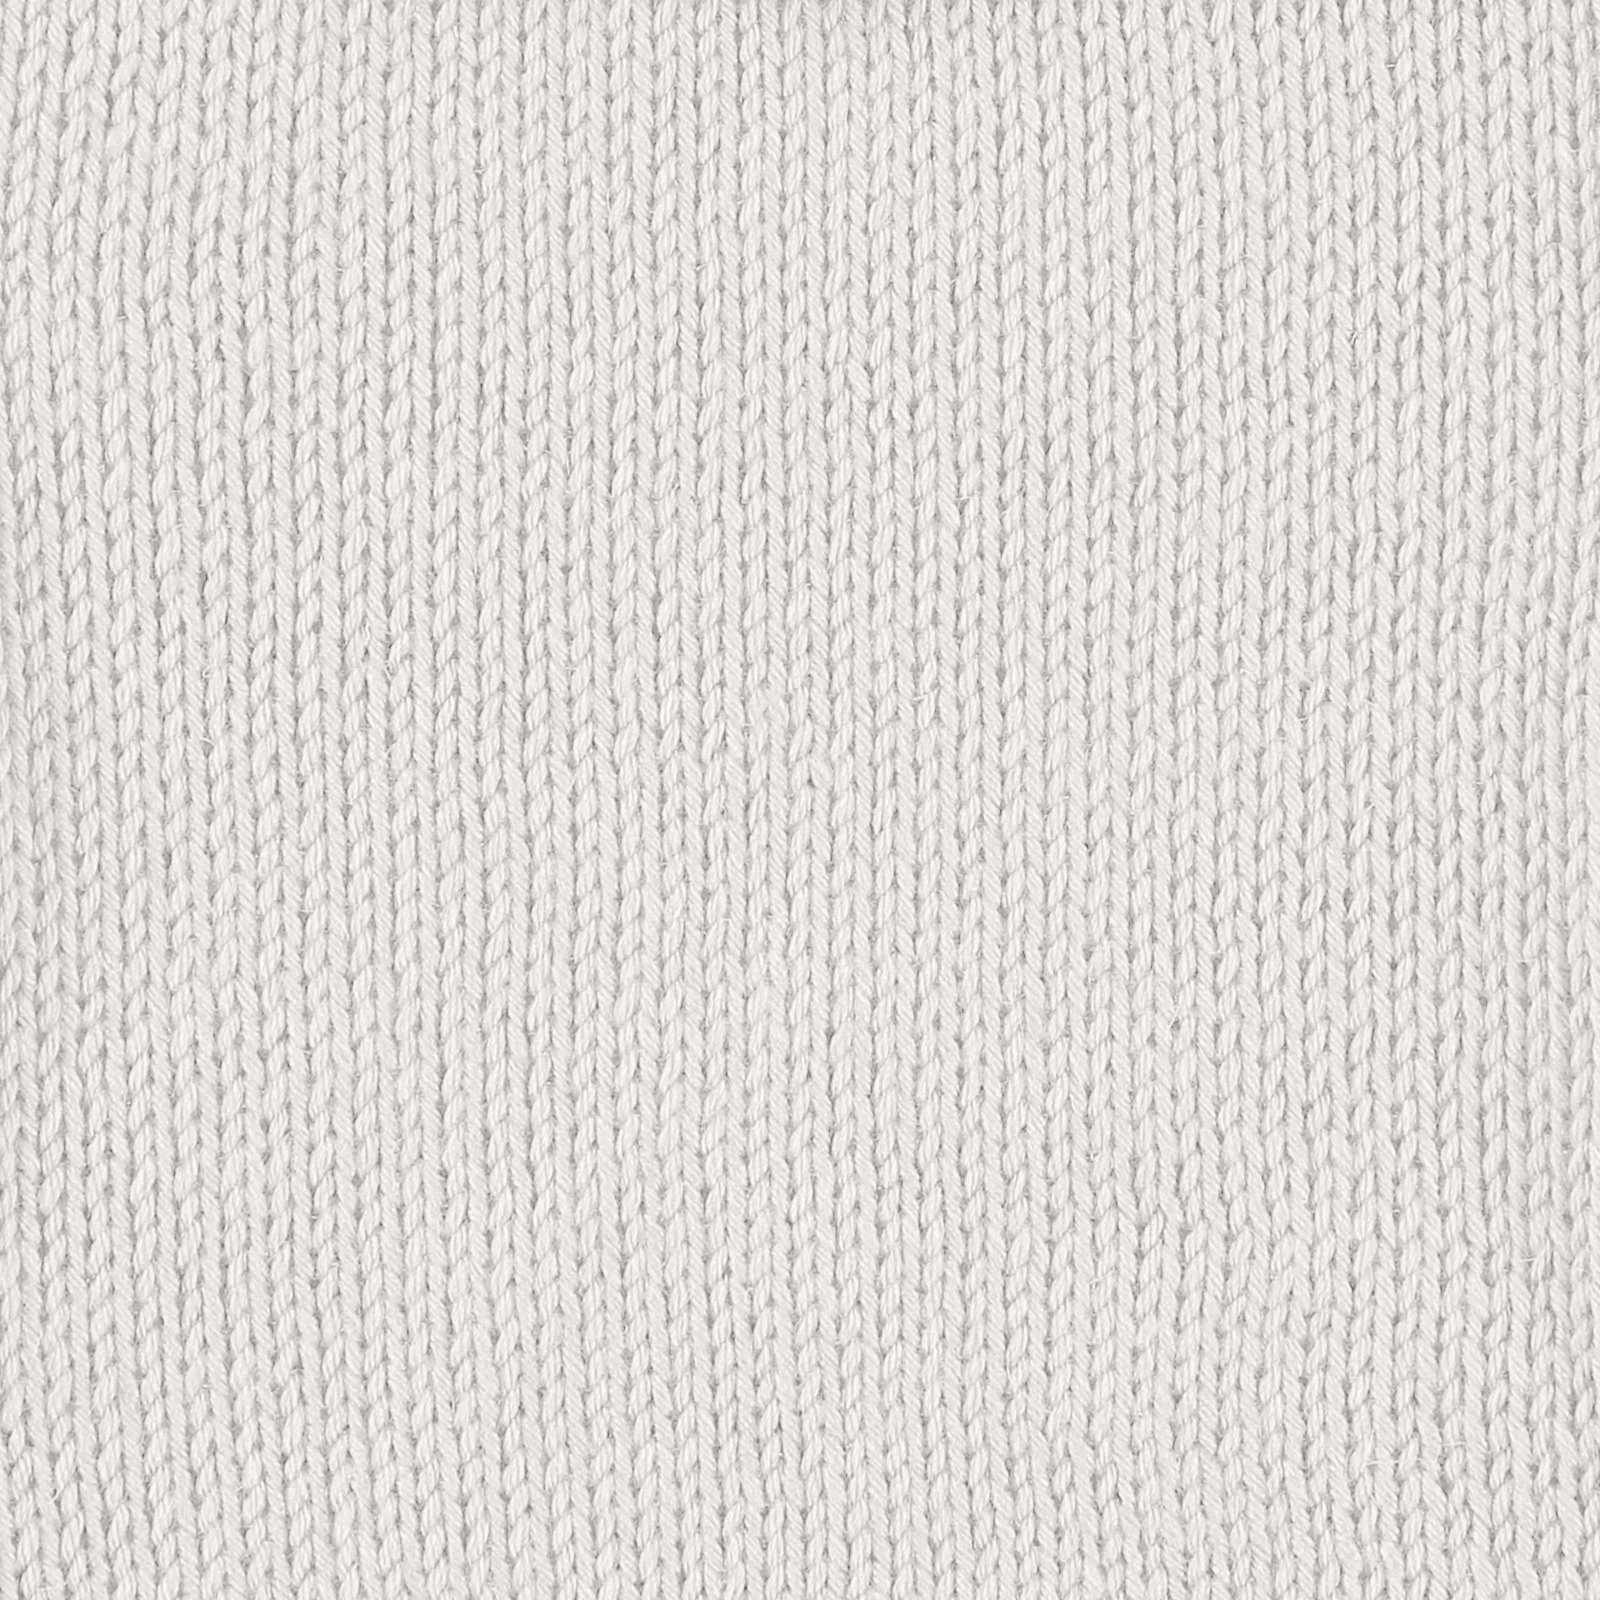 FRAYA, viscose bamboo silk yarn "Thoughtful", white 90000184_sskit